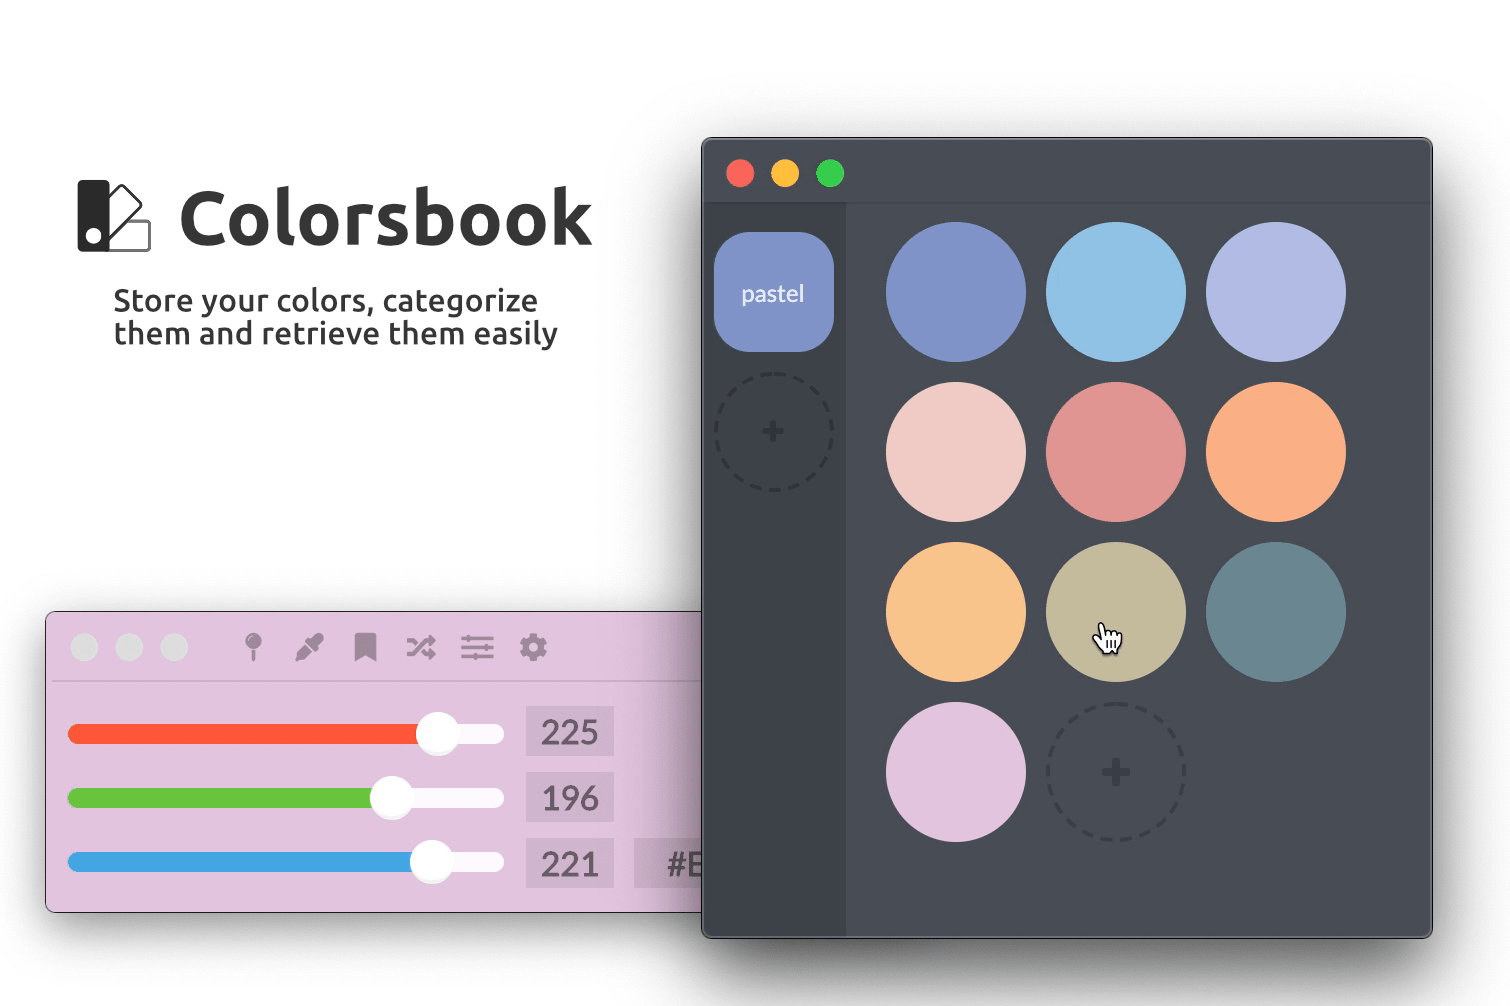 A mininal but complete colorpicker desktop app